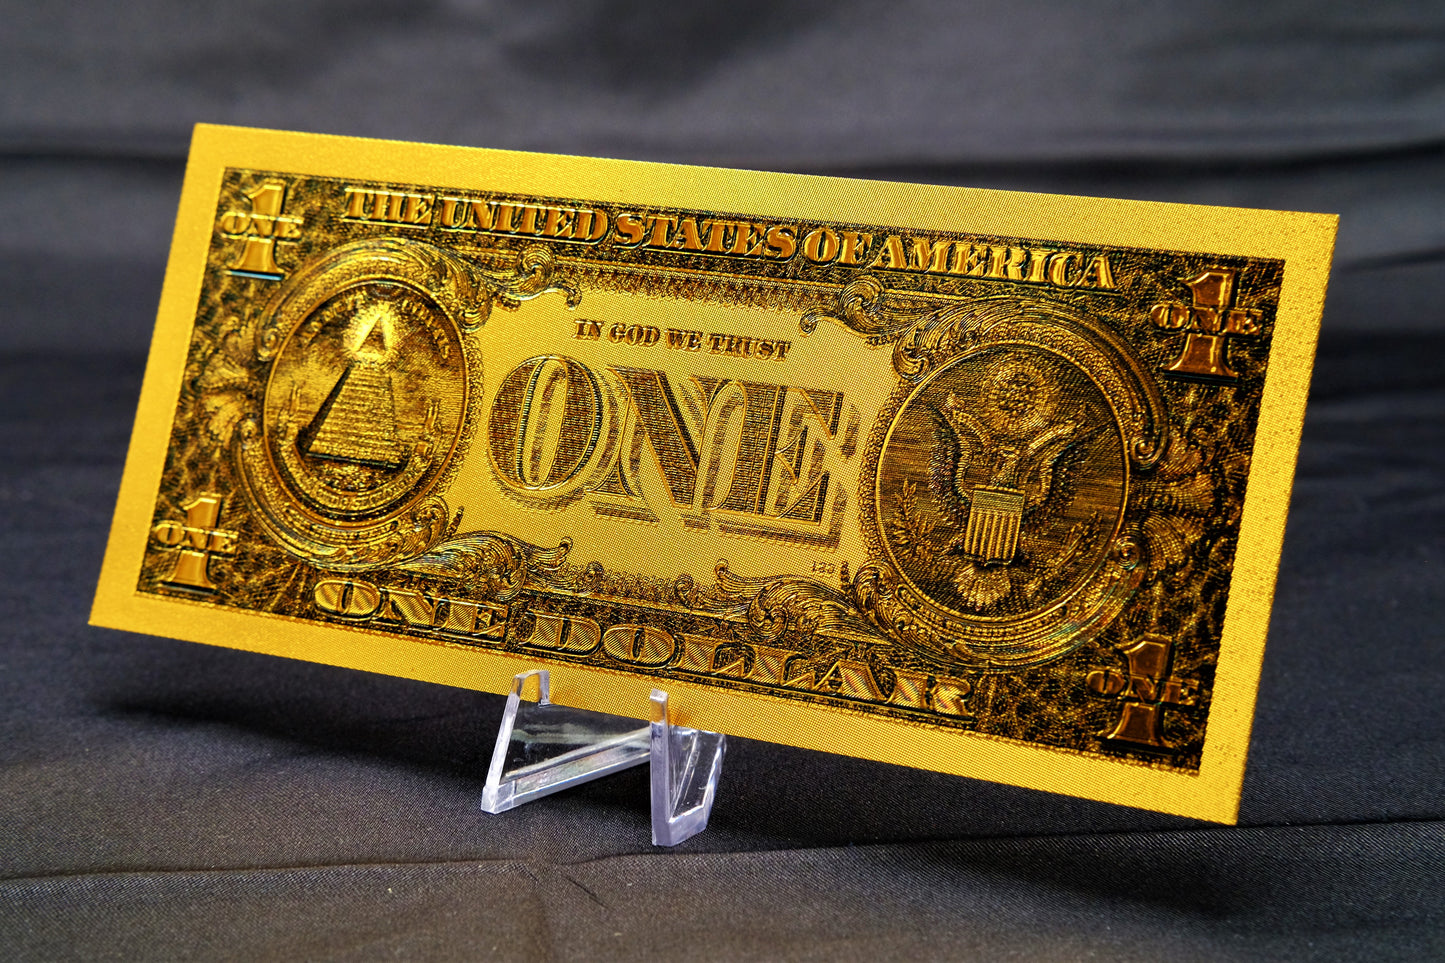 24K Gold Foil $1 US Bill Decorative